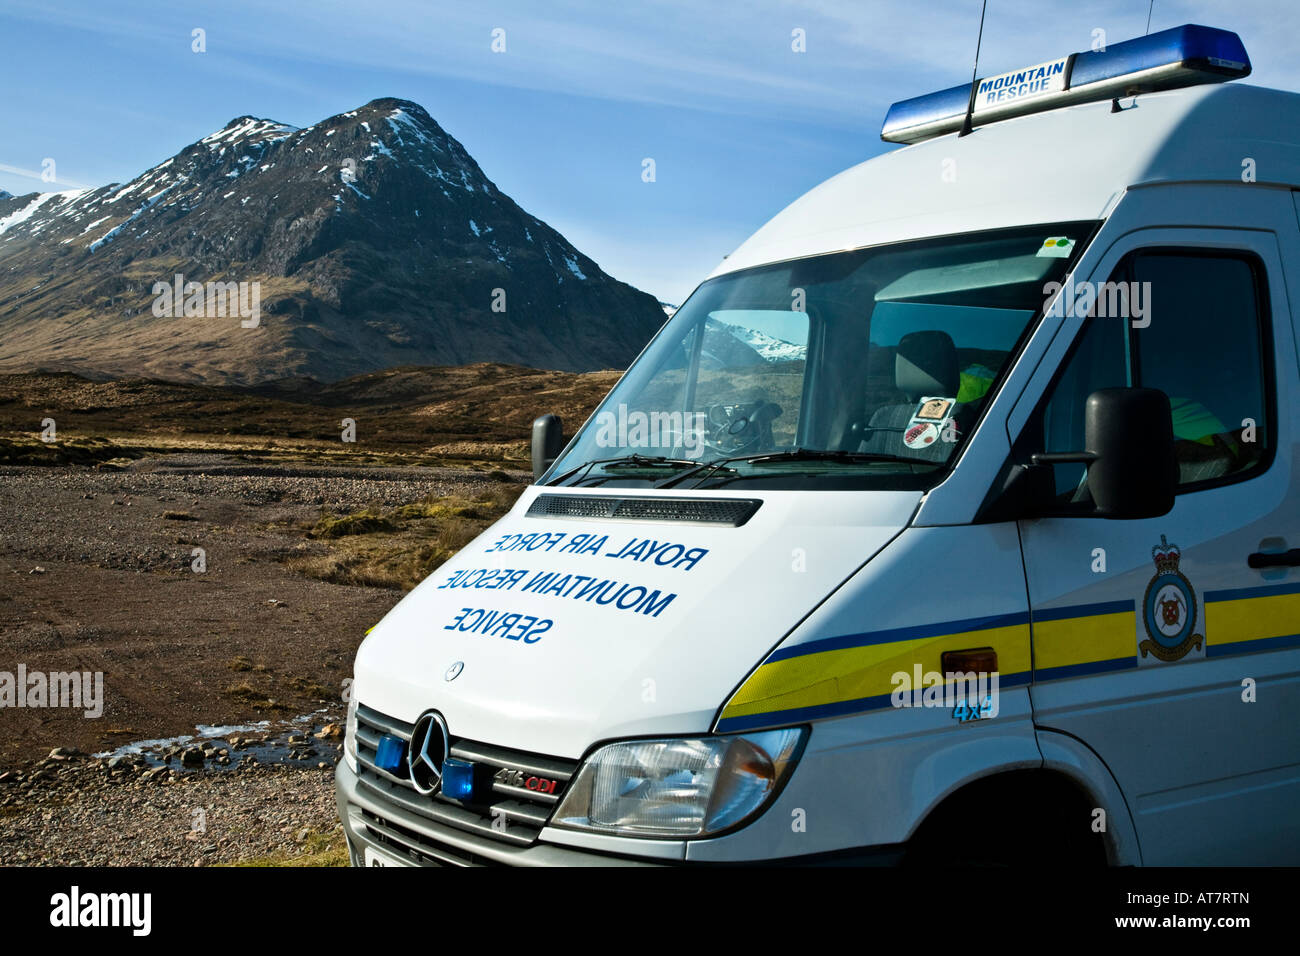 A Royal Air Force Mercedes Benz Sprinter 416 CDI mountain rescue van in Glen Coe, Lochaber, Scotland. Stock Photo